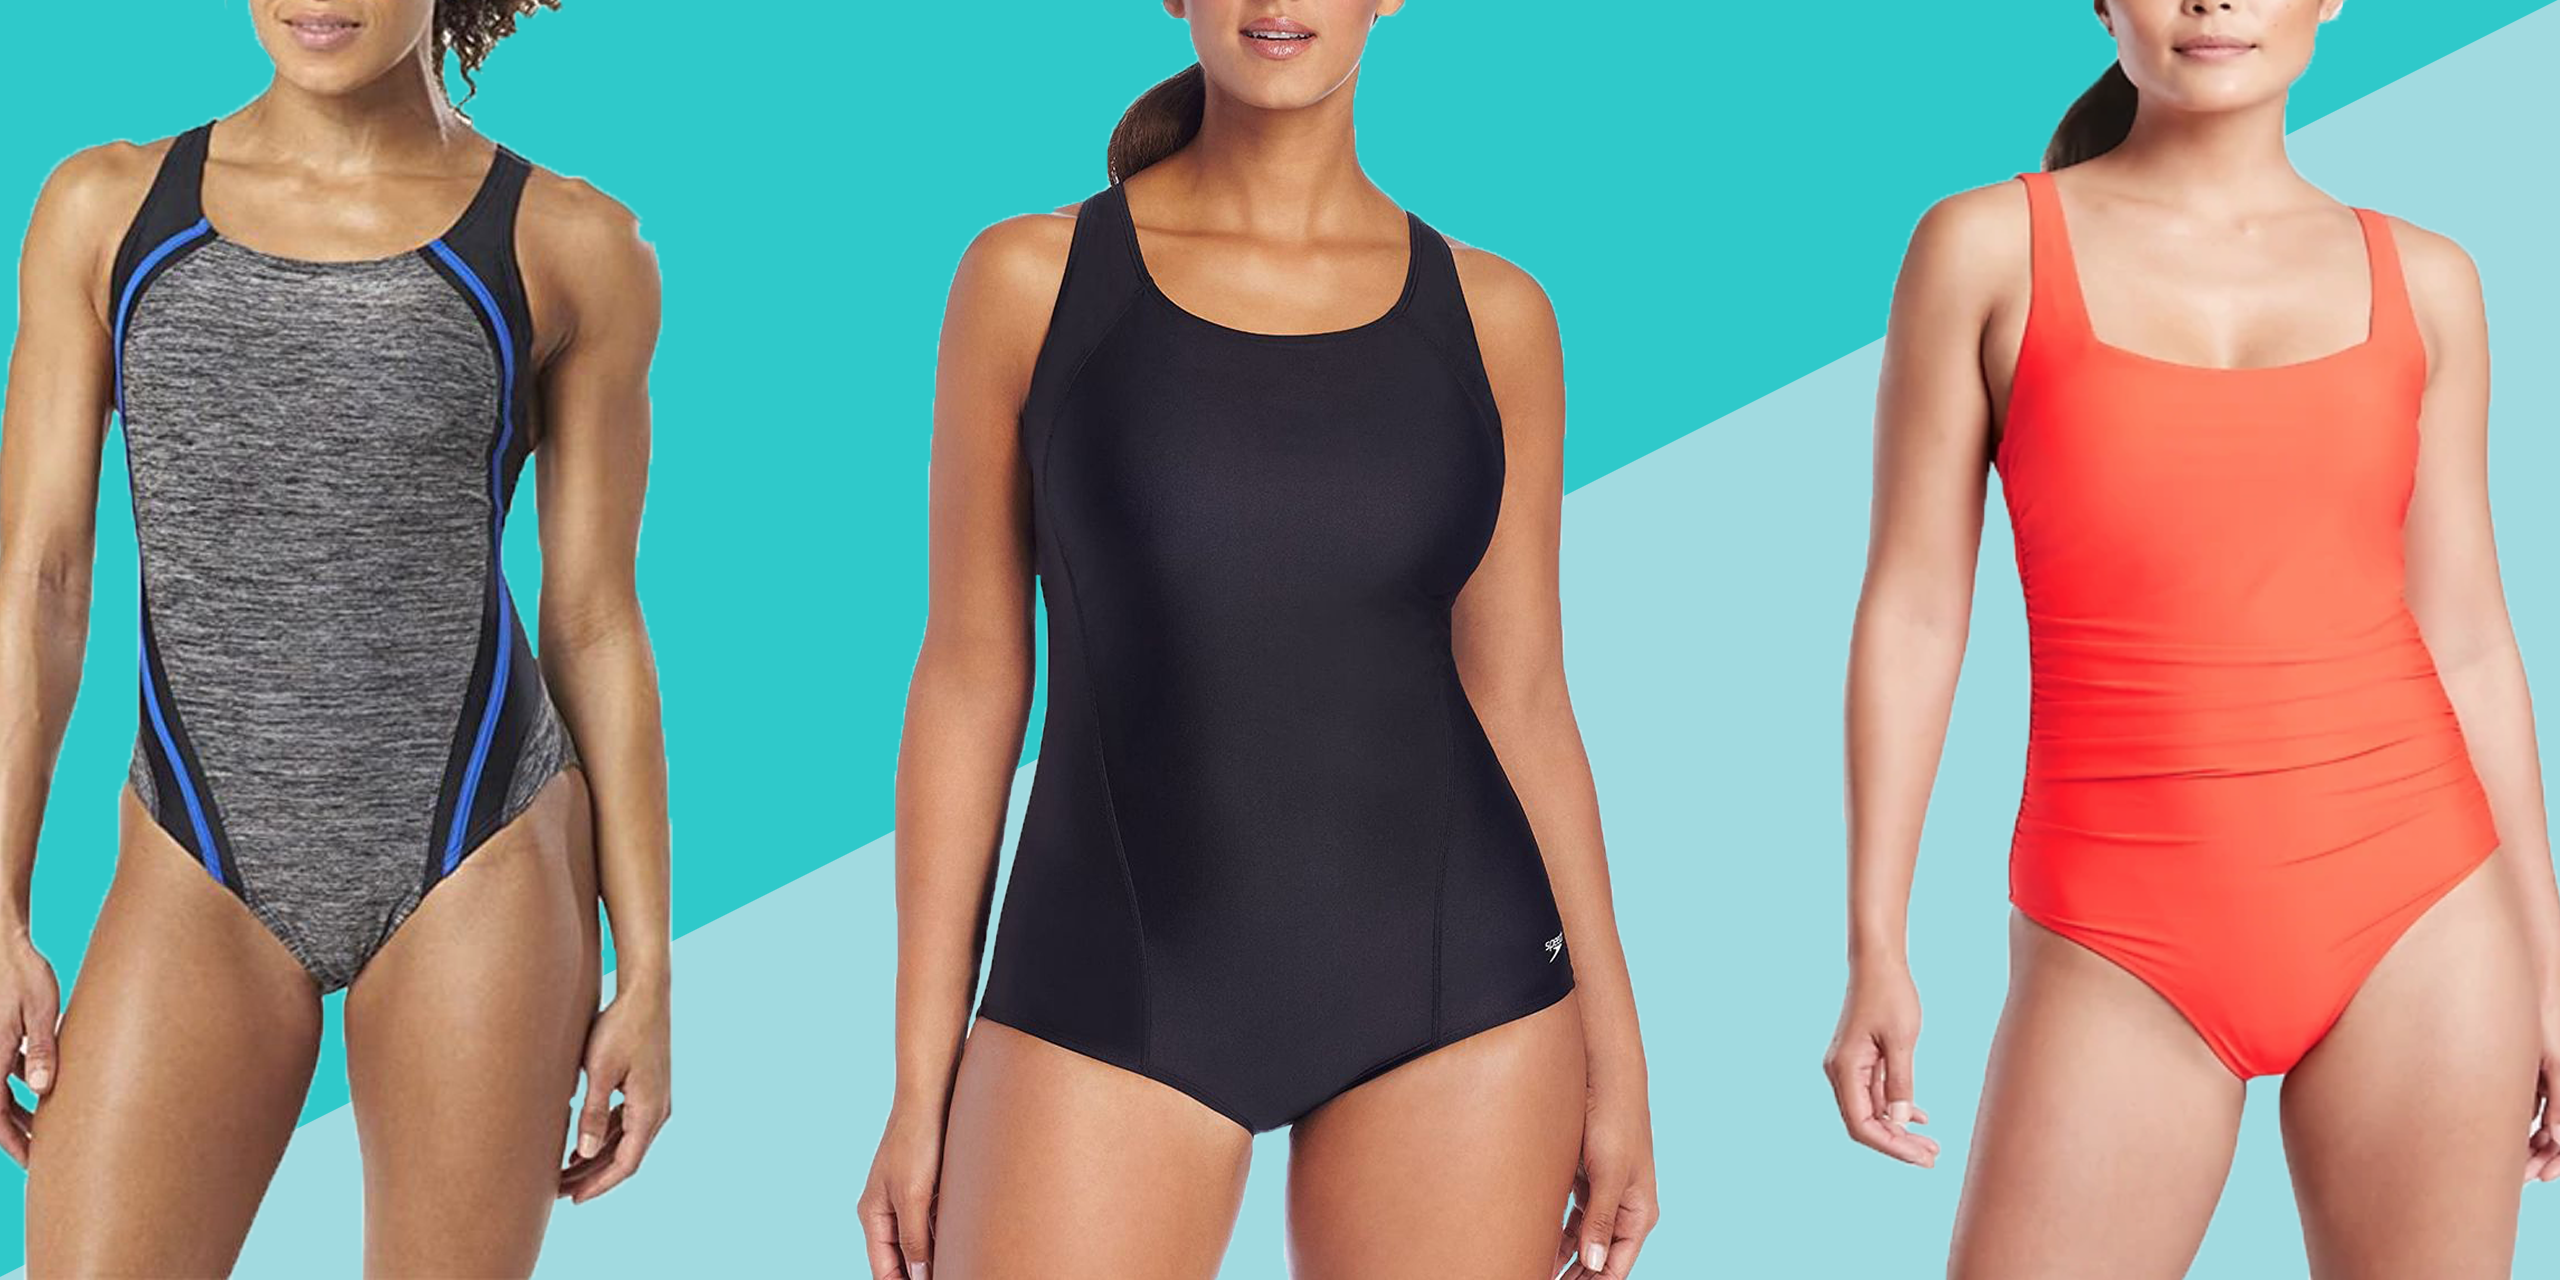  Beautyin One Piece Bathing Suit For Women Athletic Training  Swimsuit Lap Swimwear